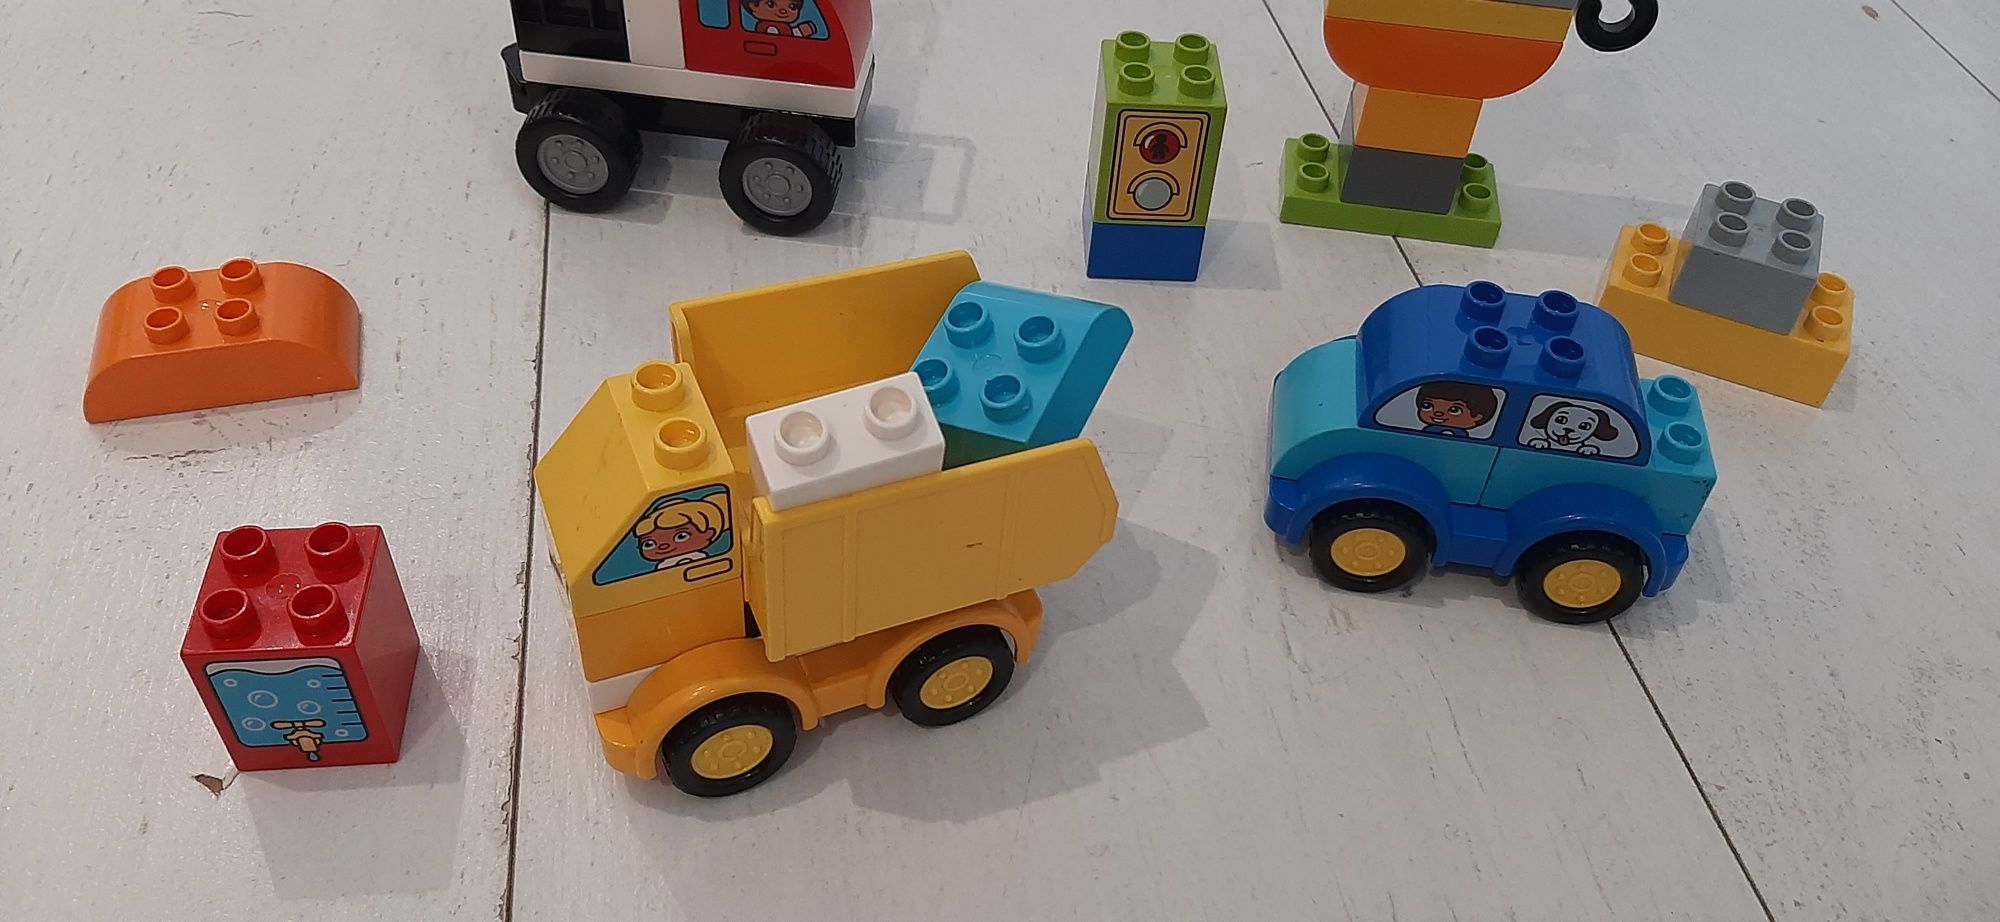 Lego Duplo 10816 Moje pierwsze pojazdy